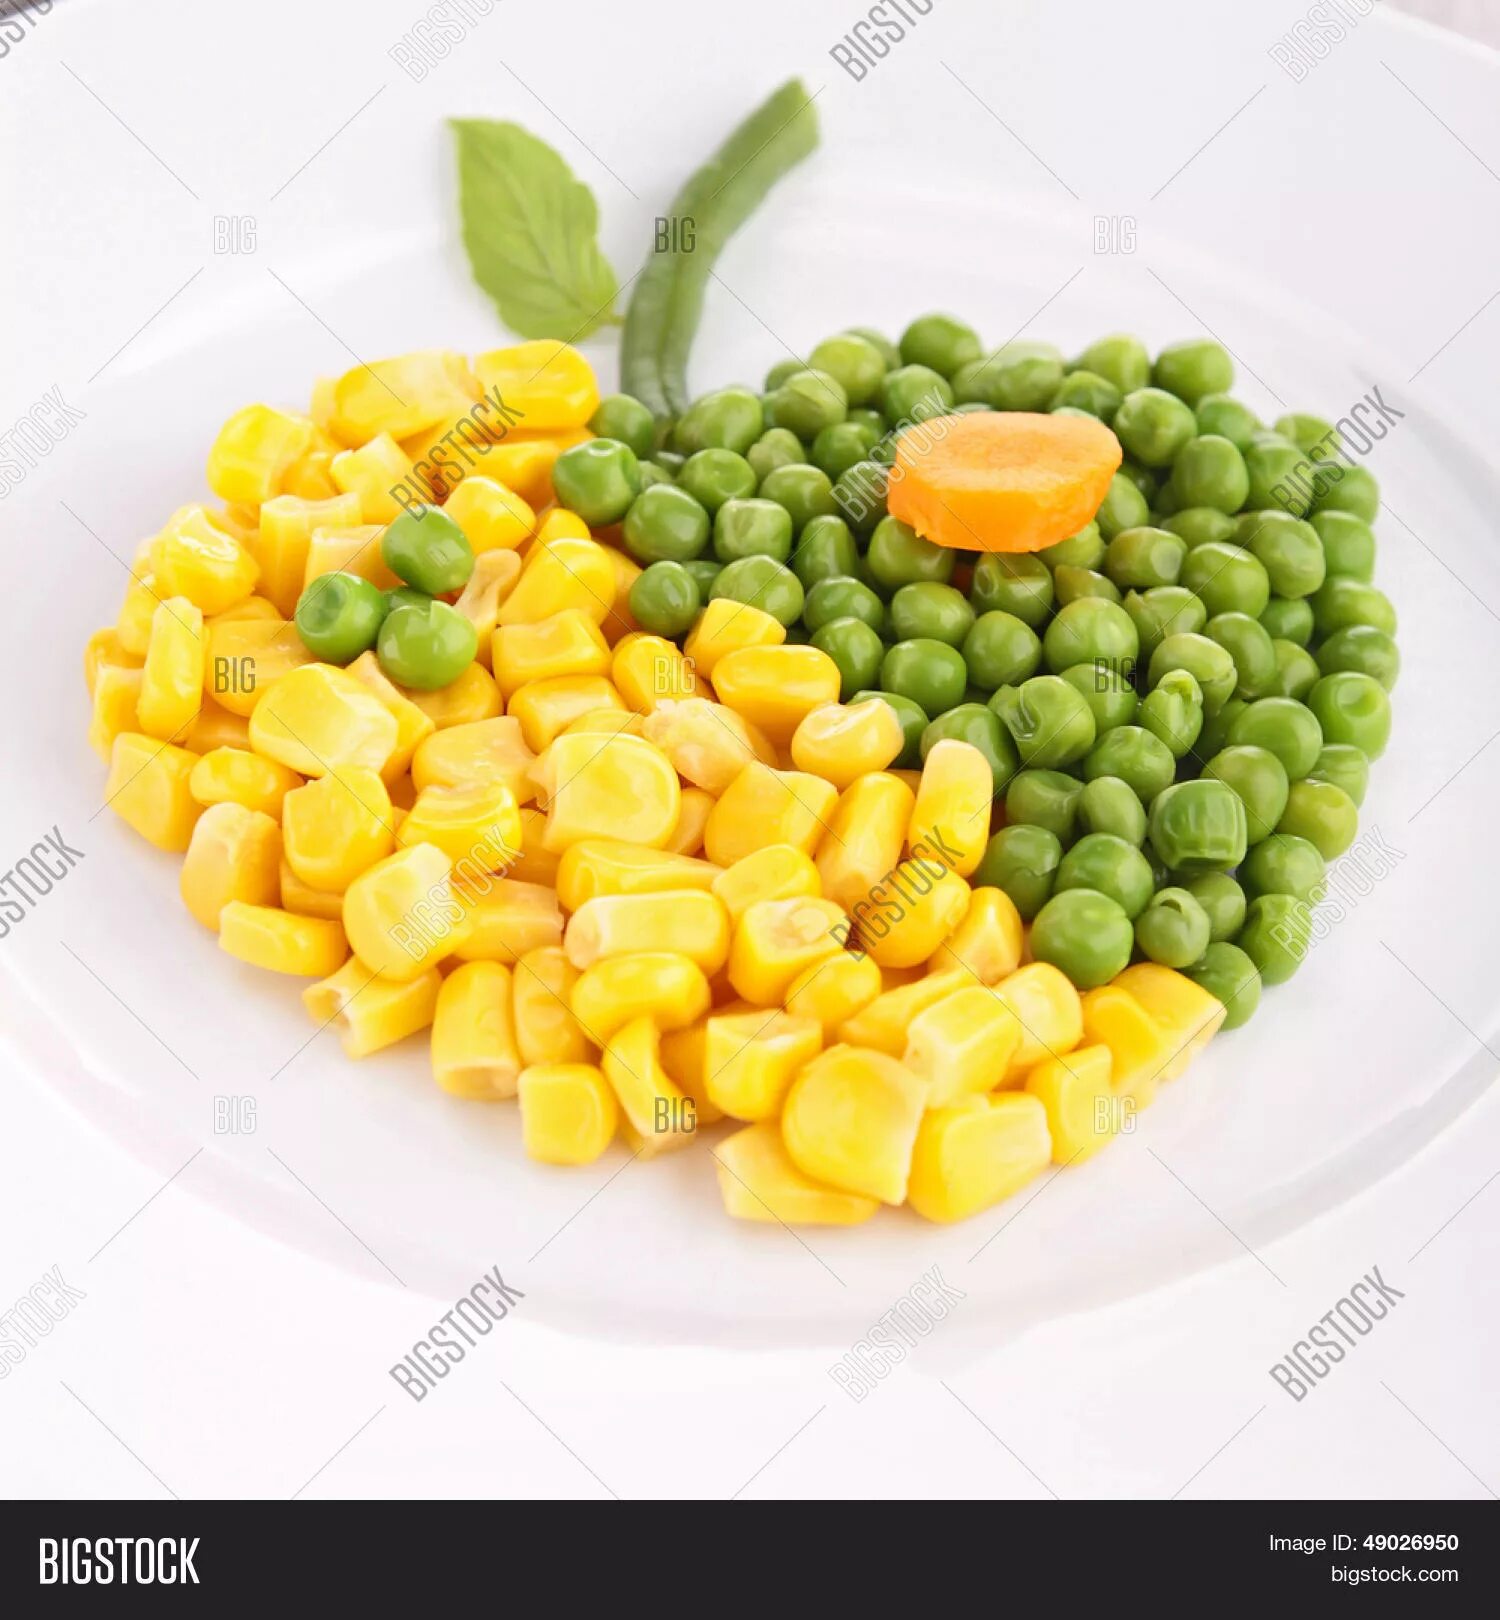 Зеленый горошек и кукуруза. Горошек и кукуруза на тарелке. Кукурузный горошек. Консервированный горошек кукуруза. Кукуруза или горох